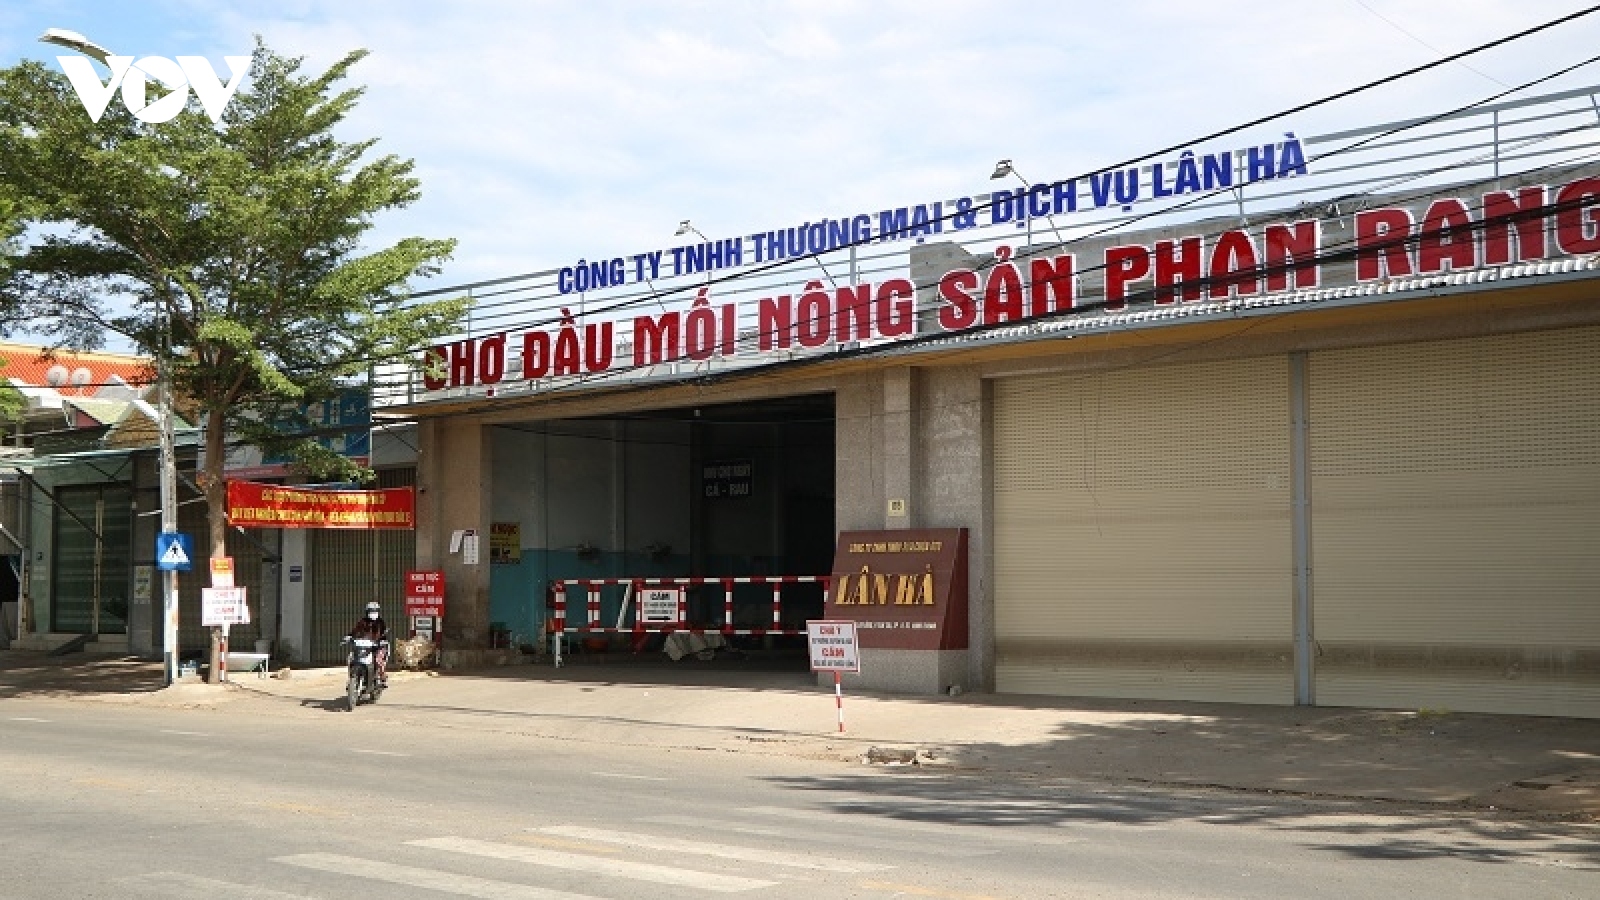 Tạm dừng hoạt động chợ nông sản Phan Rang vì phát hiện chùm ca mắc Covid-19  